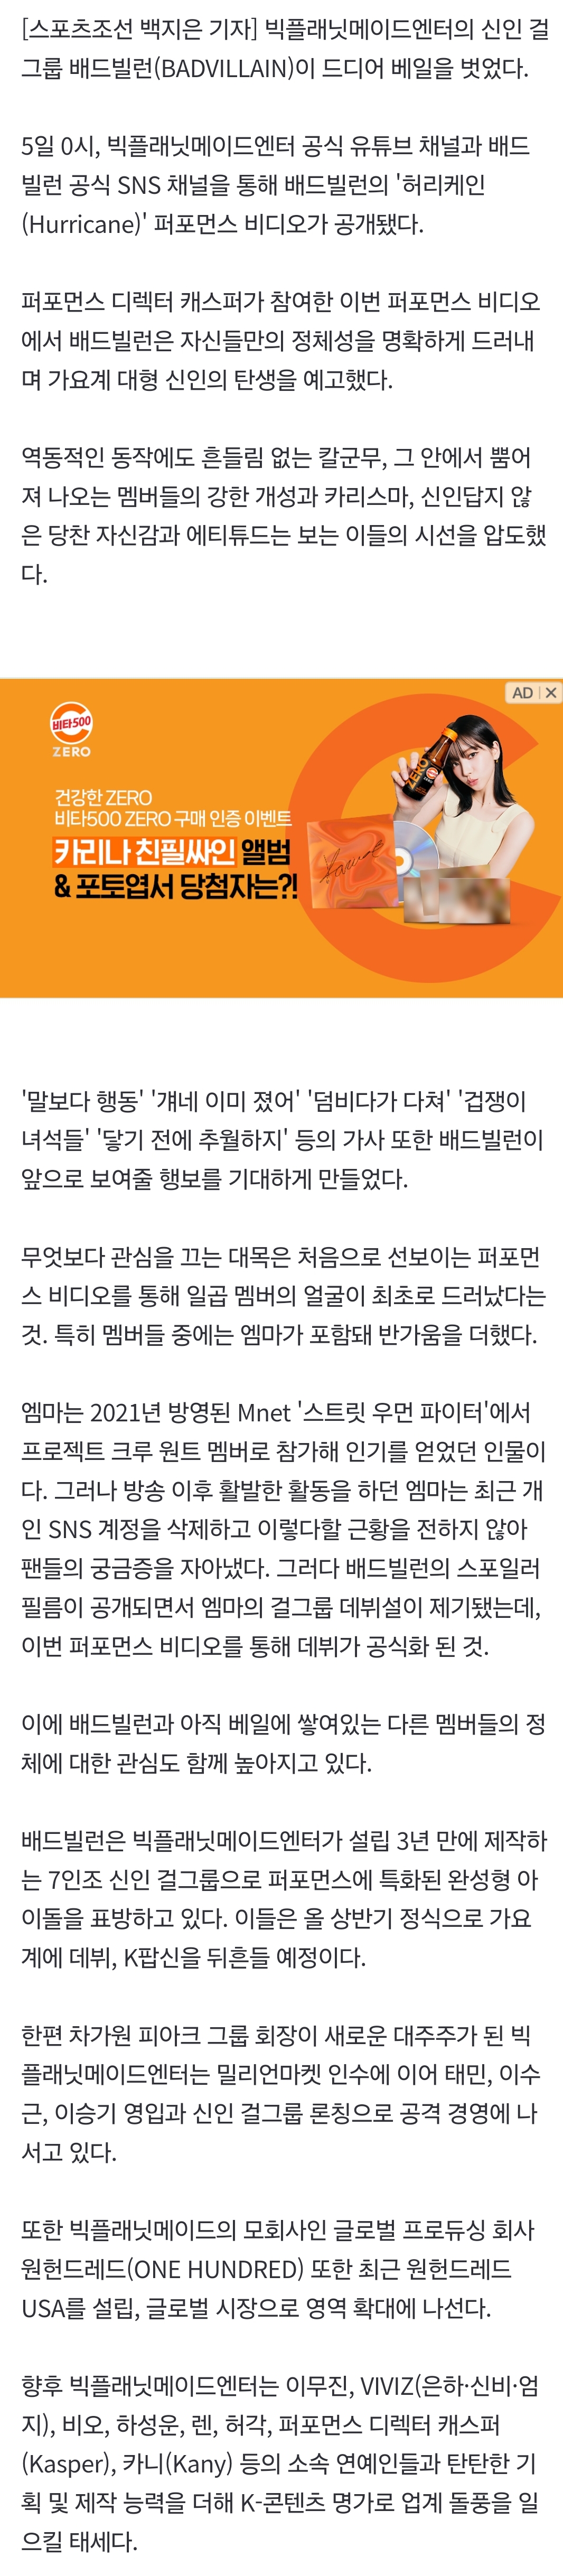 [정보/소식] '빅플래닛 걸그룹' 배드빌런, '스우파' 엠마 데뷔확정…첫 퍼포먼스 비디오 공개 | 인스티즈